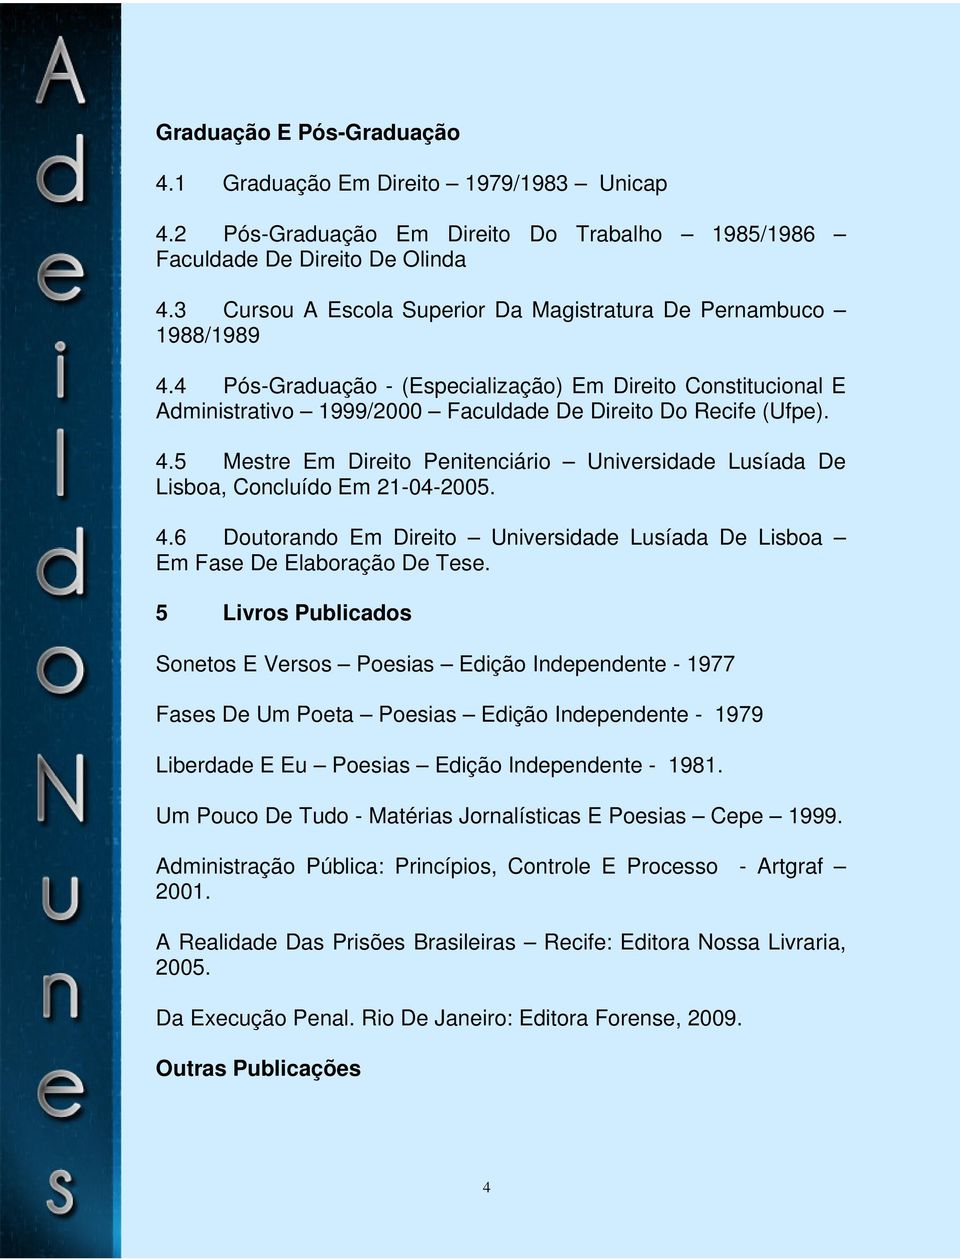 4.6 Doutorando Em Direito Universidade Lusíada De Lisboa Em Fase De Elaboração De Tese.